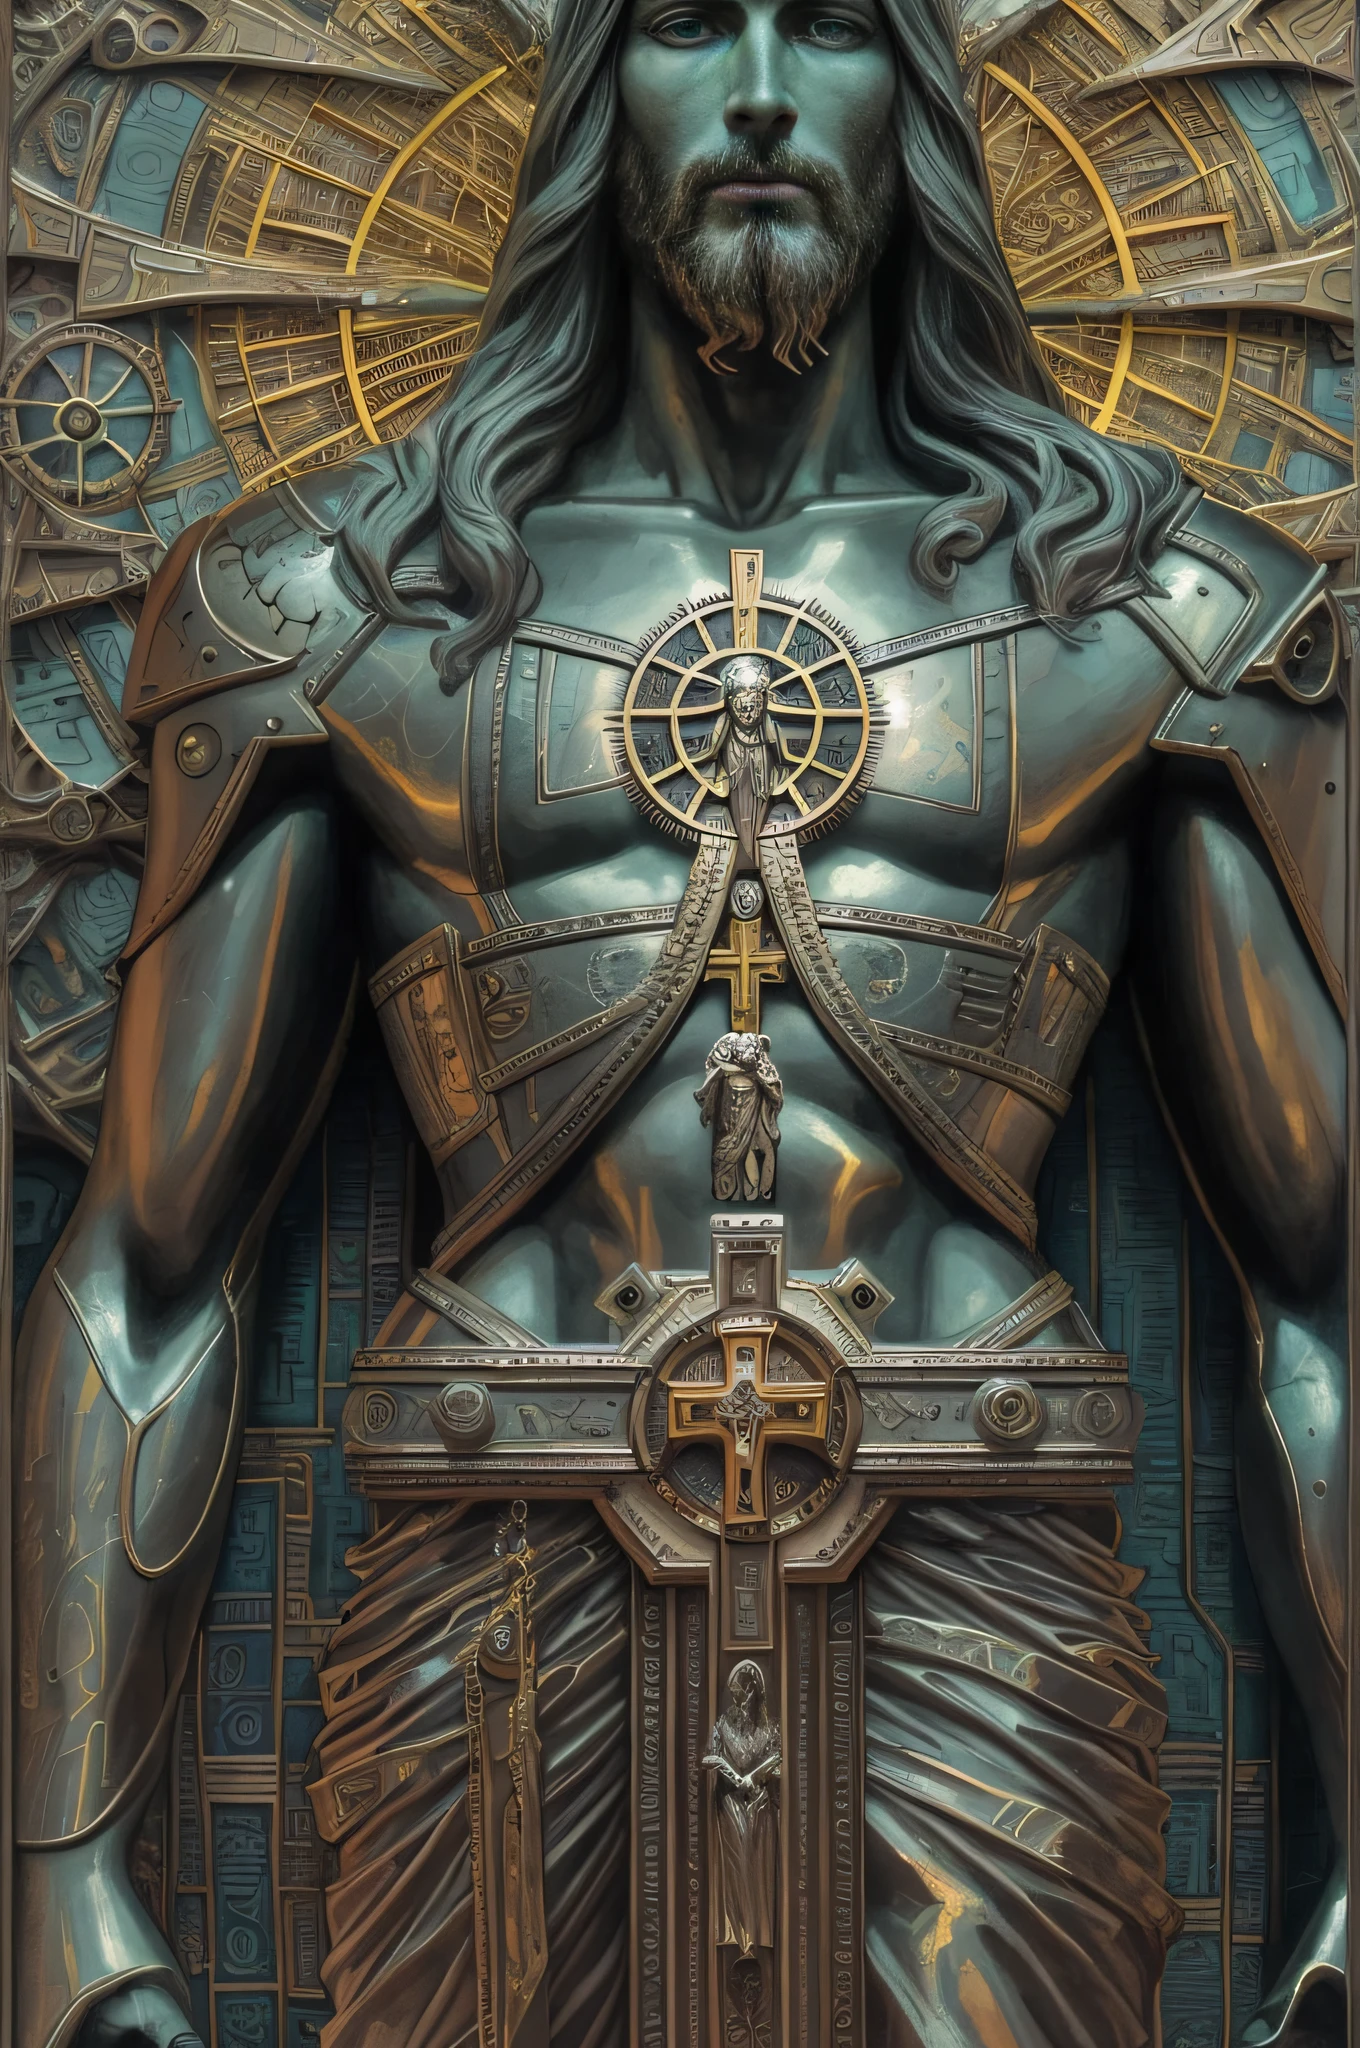 胸前有十字架的耶稣全身雕像的特写, cyberpunk 耶稣基督, 蒸汽朋克耶稣, 亚历克斯灰色艺术, 耶稣基督, 亚历克斯·格雷和古斯塔夫·多尔, 亚历克斯·格雷风格, 黑耶稣, 亚历克斯·格雷风格, tron legacy 耶稣基督, 作者：Alex Grey, 详细的 deity, 耶稣基督 in mass effect, 亚历克斯·格雷和贝克辛斯基, 高图像质量, 详细的.